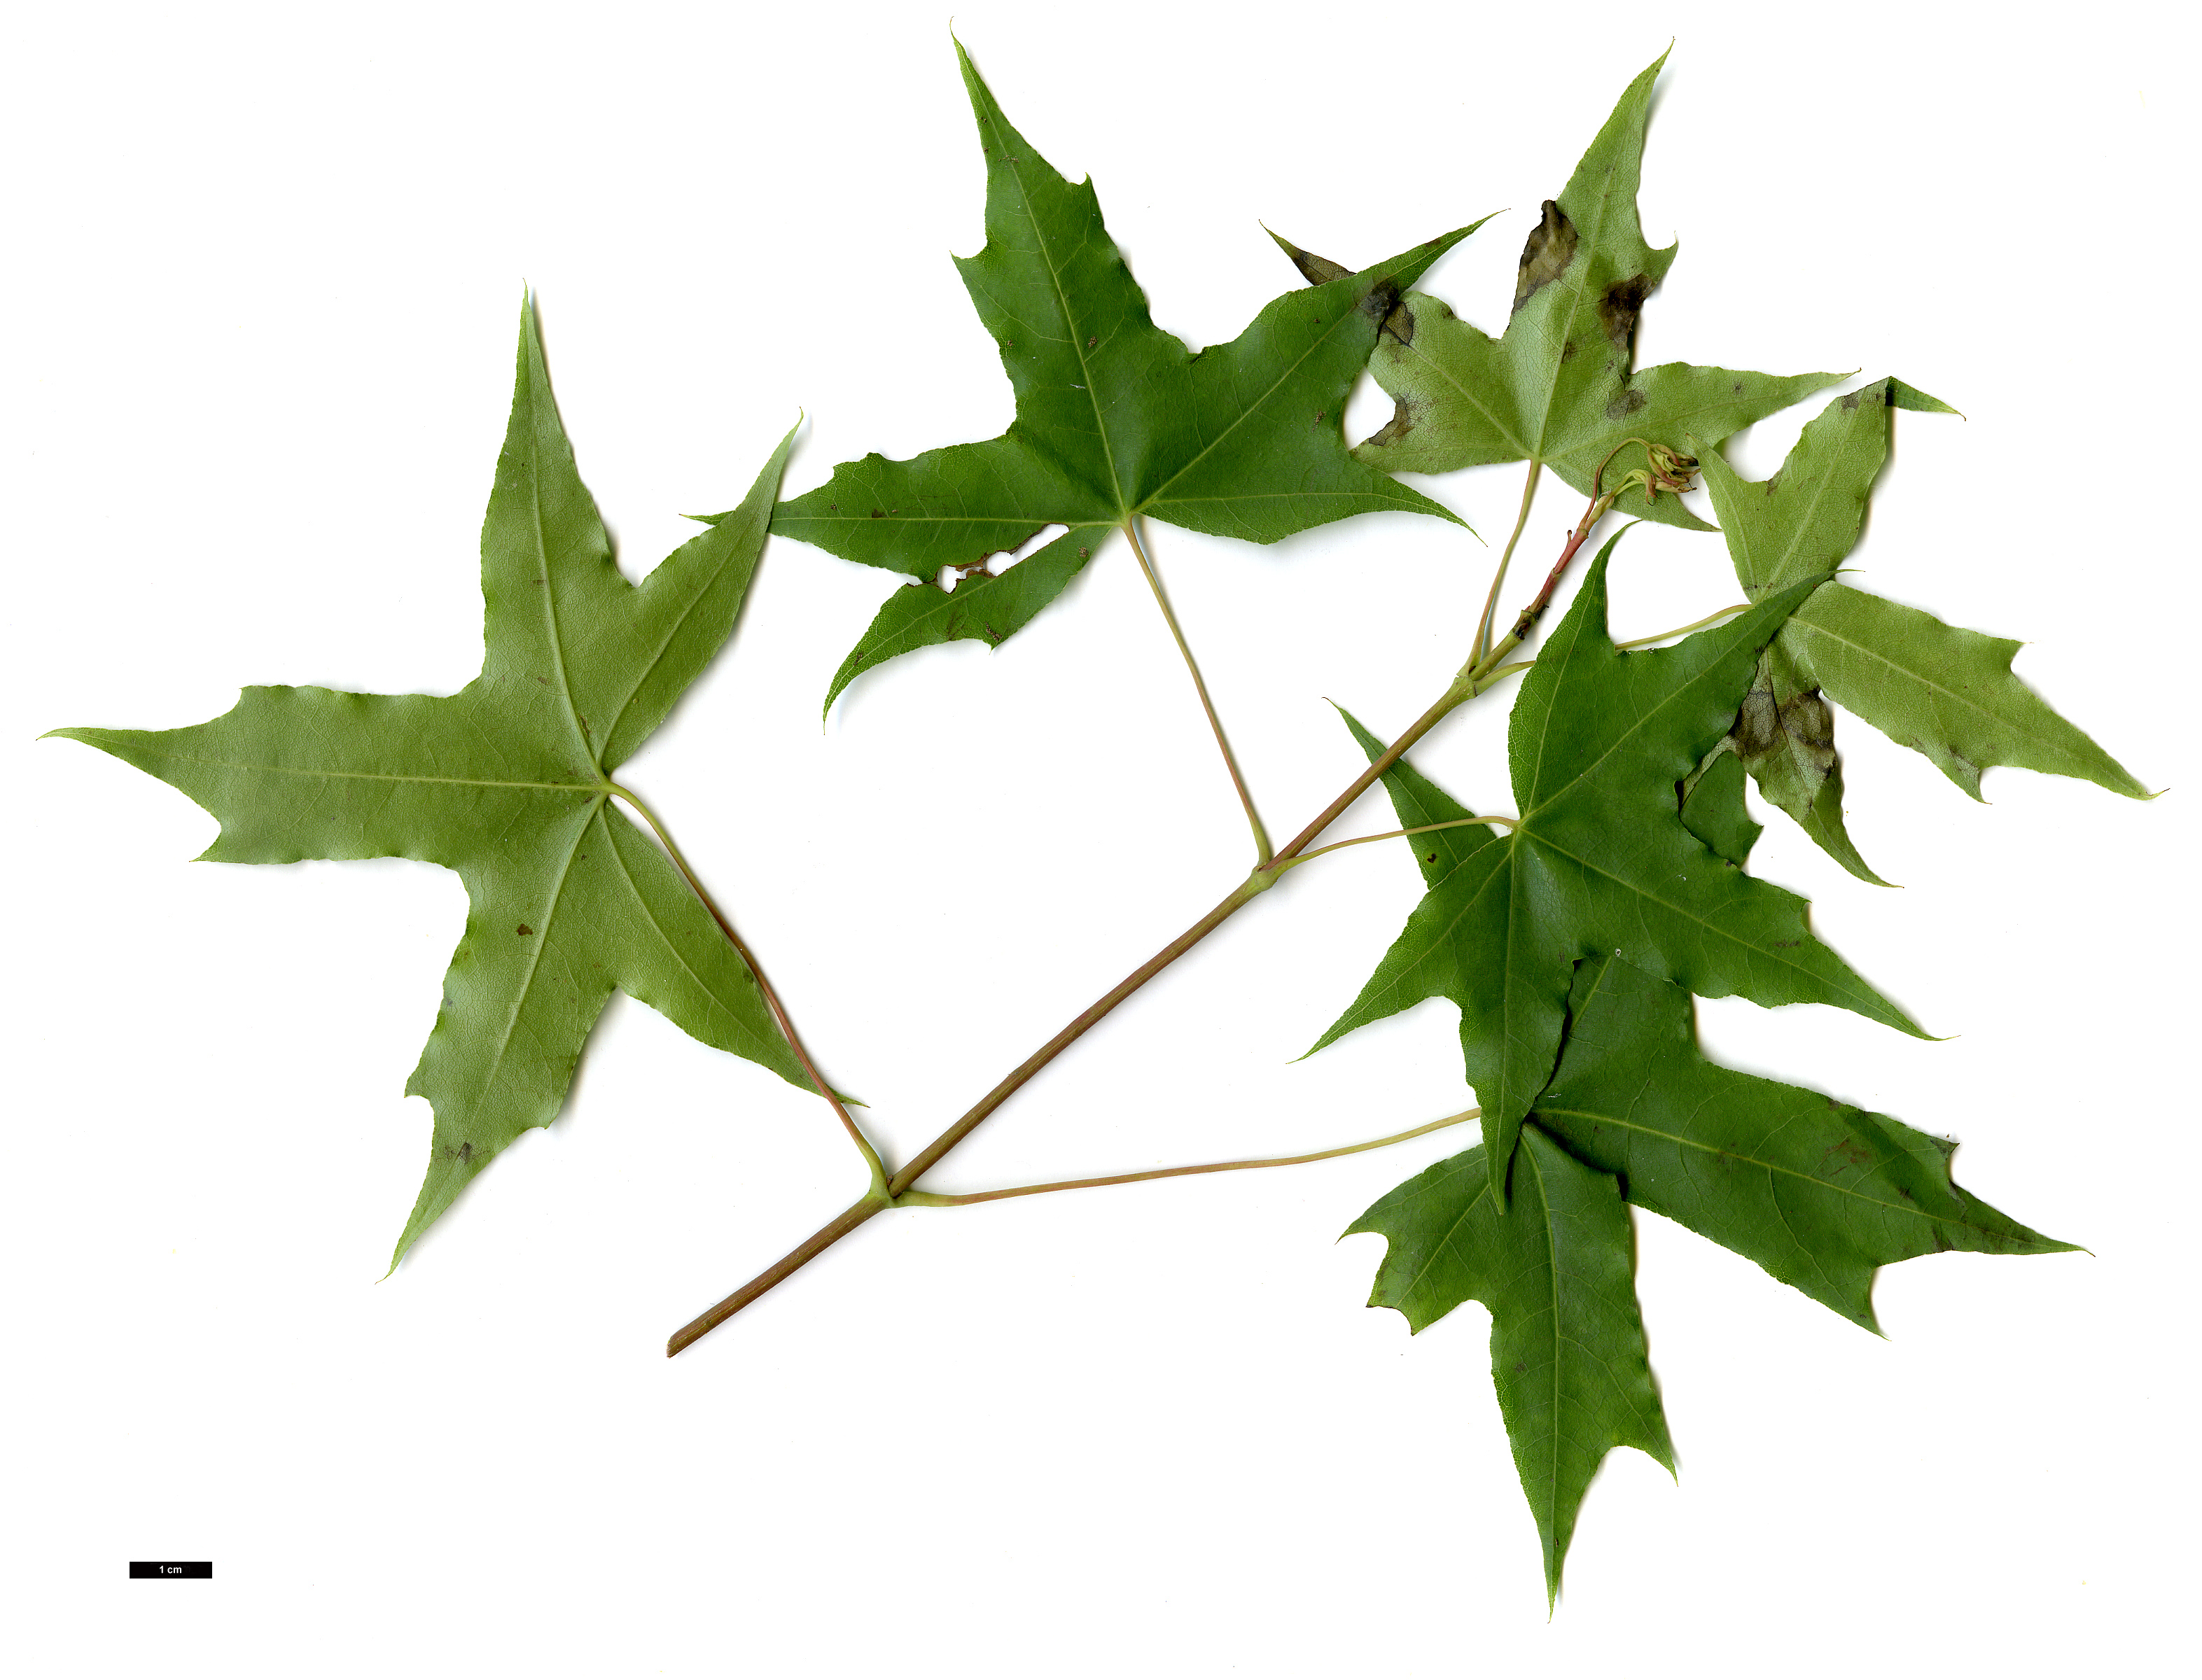 High resolution image: Family: Sapindaceae - Genus: Acer - Taxon: truncatum